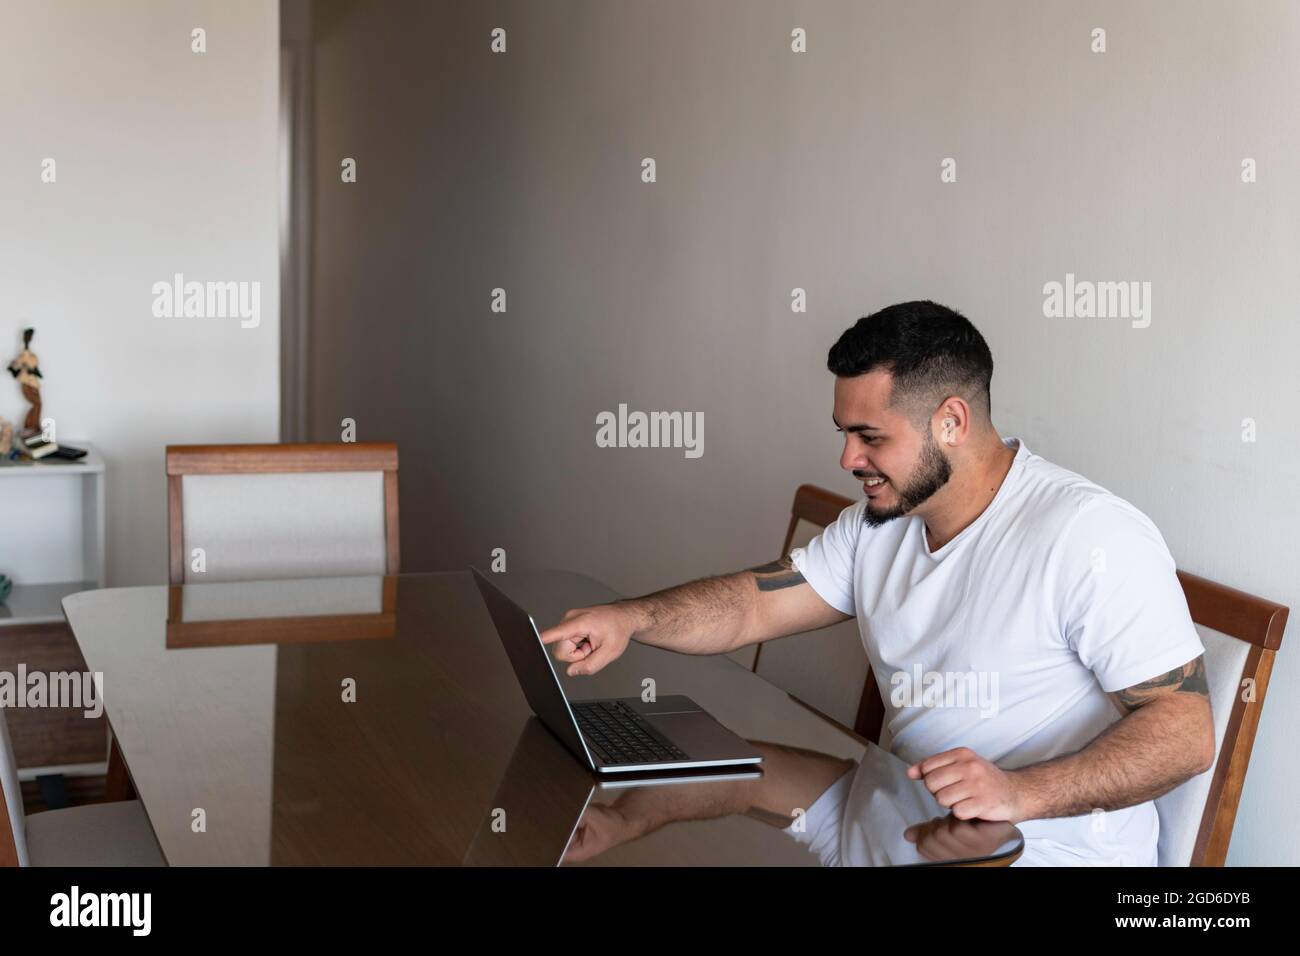 Latino homme avec des tatouages pointant son doigt sur l'écran de l'ordinateur portable tout en souriant Banque D'Images